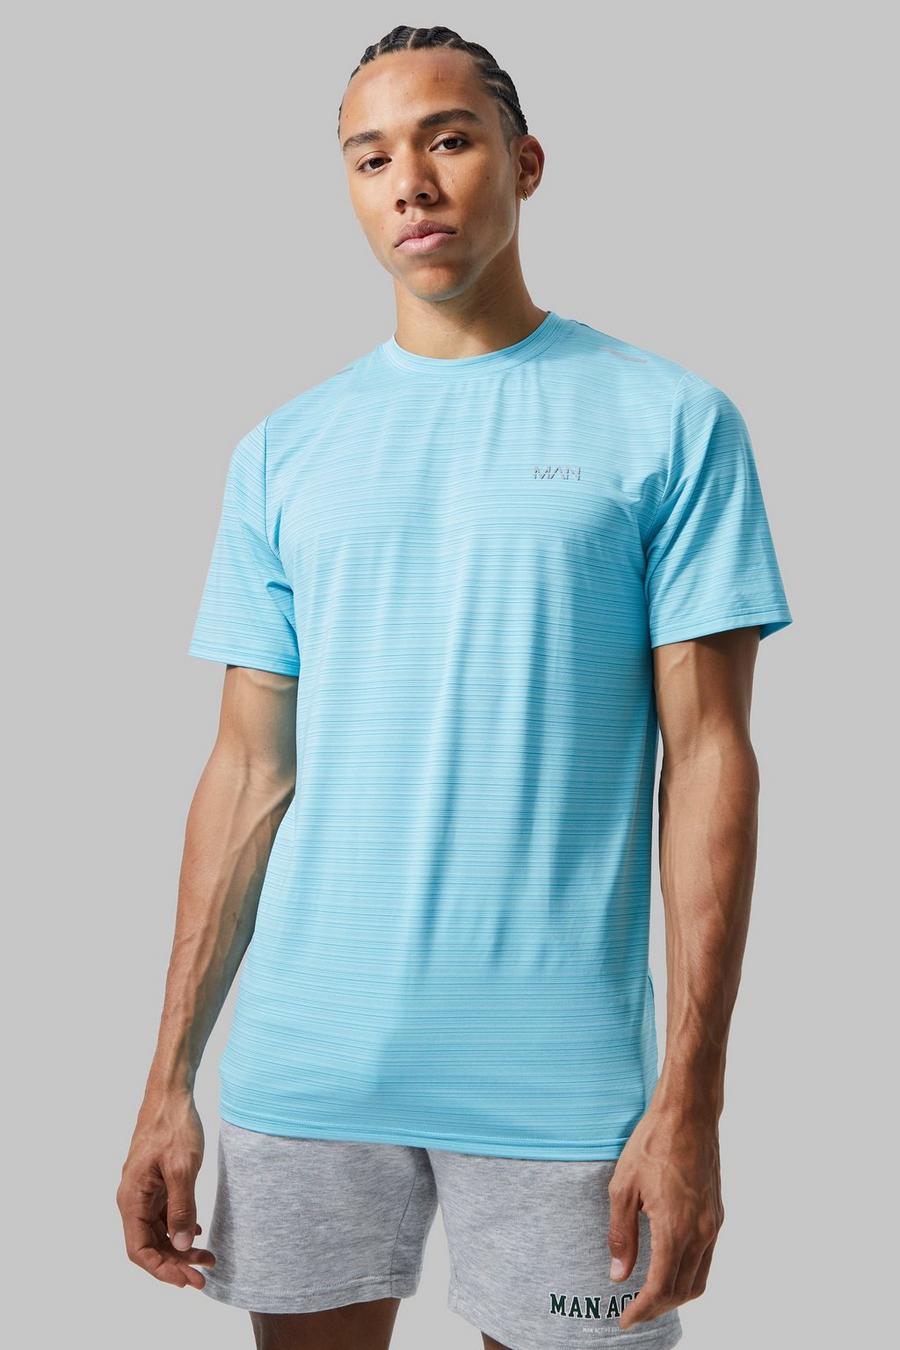 Light blue Tall Dun Man Active Performance T-Shirt